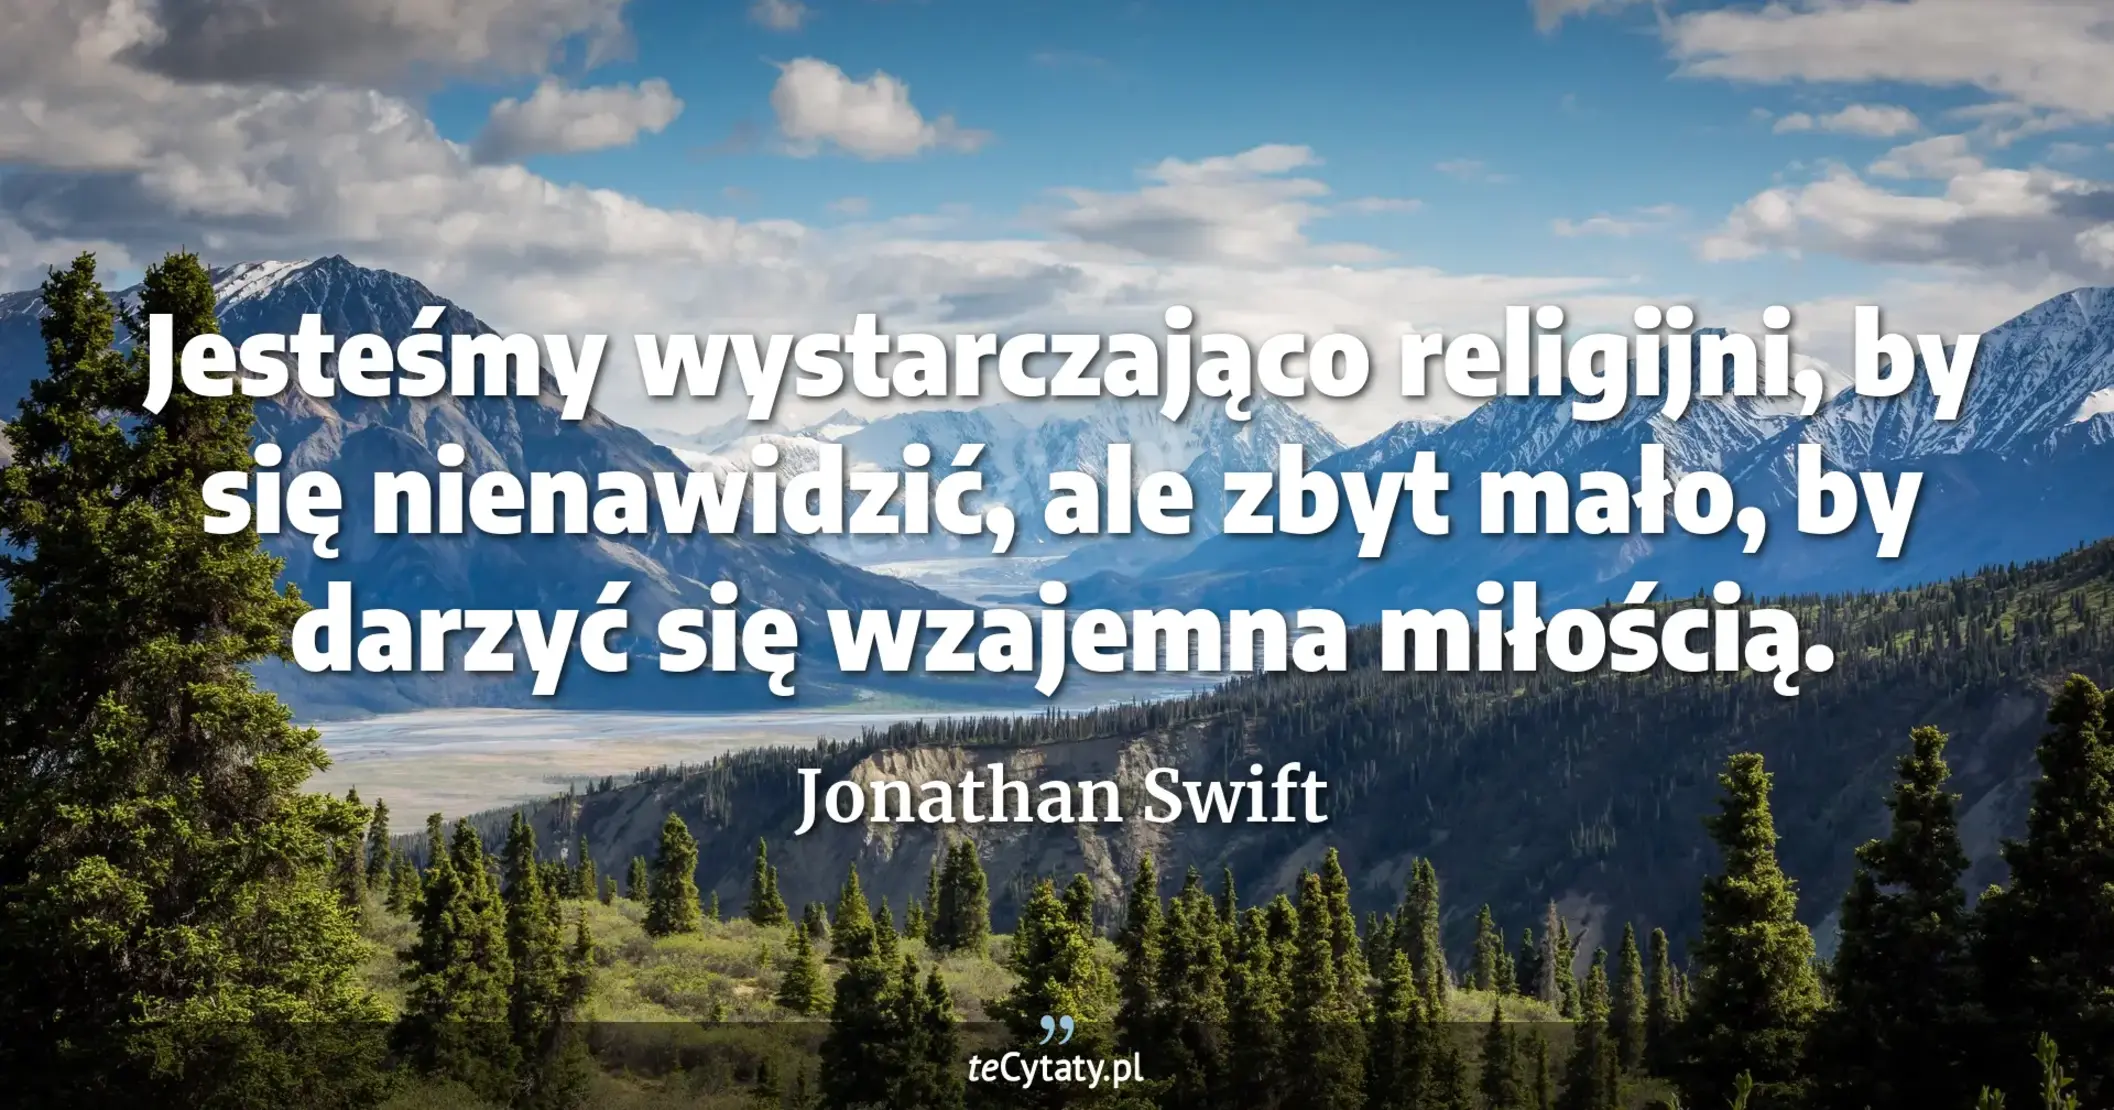 Jesteśmy wystarczająco religijni, by się nienawidzić, ale zbyt mało, by darzyć się wzajemna miłością. - Jonathan Swift